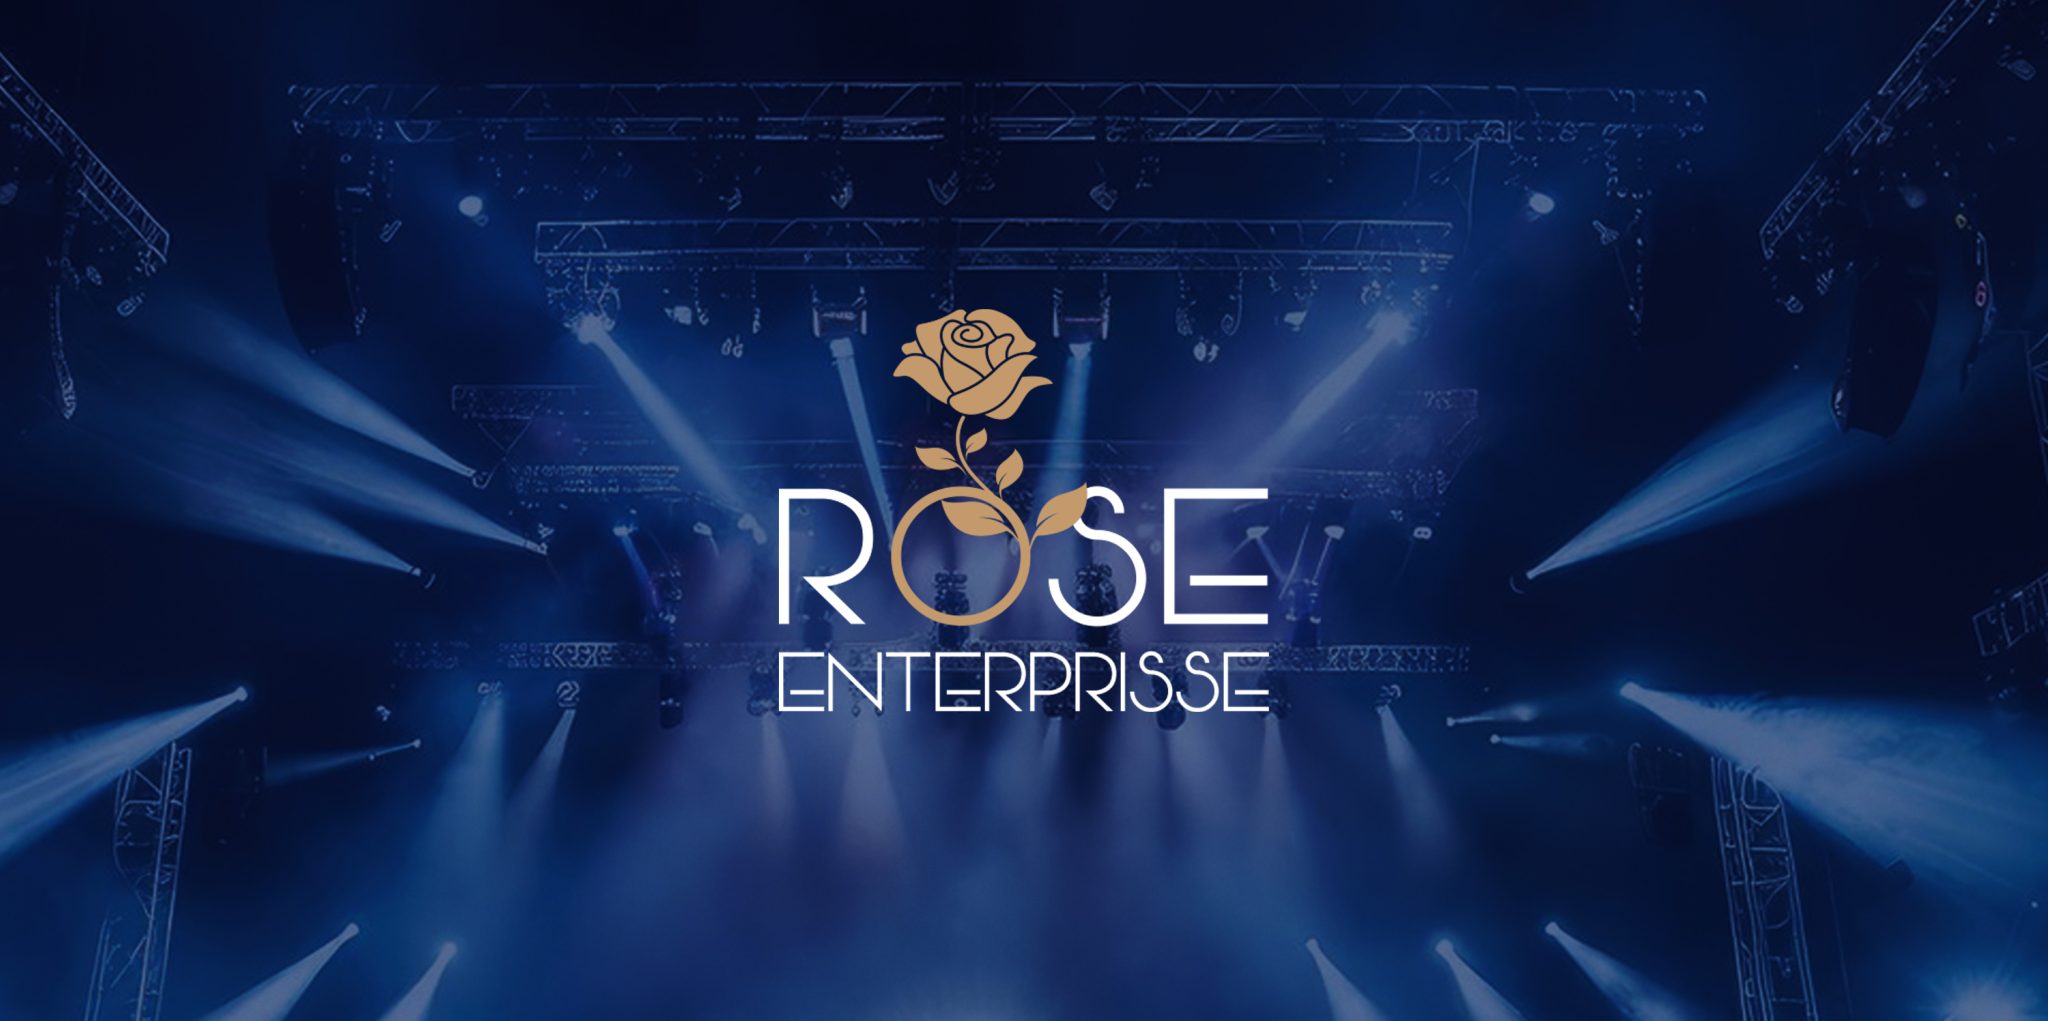 rose enterprisse banner